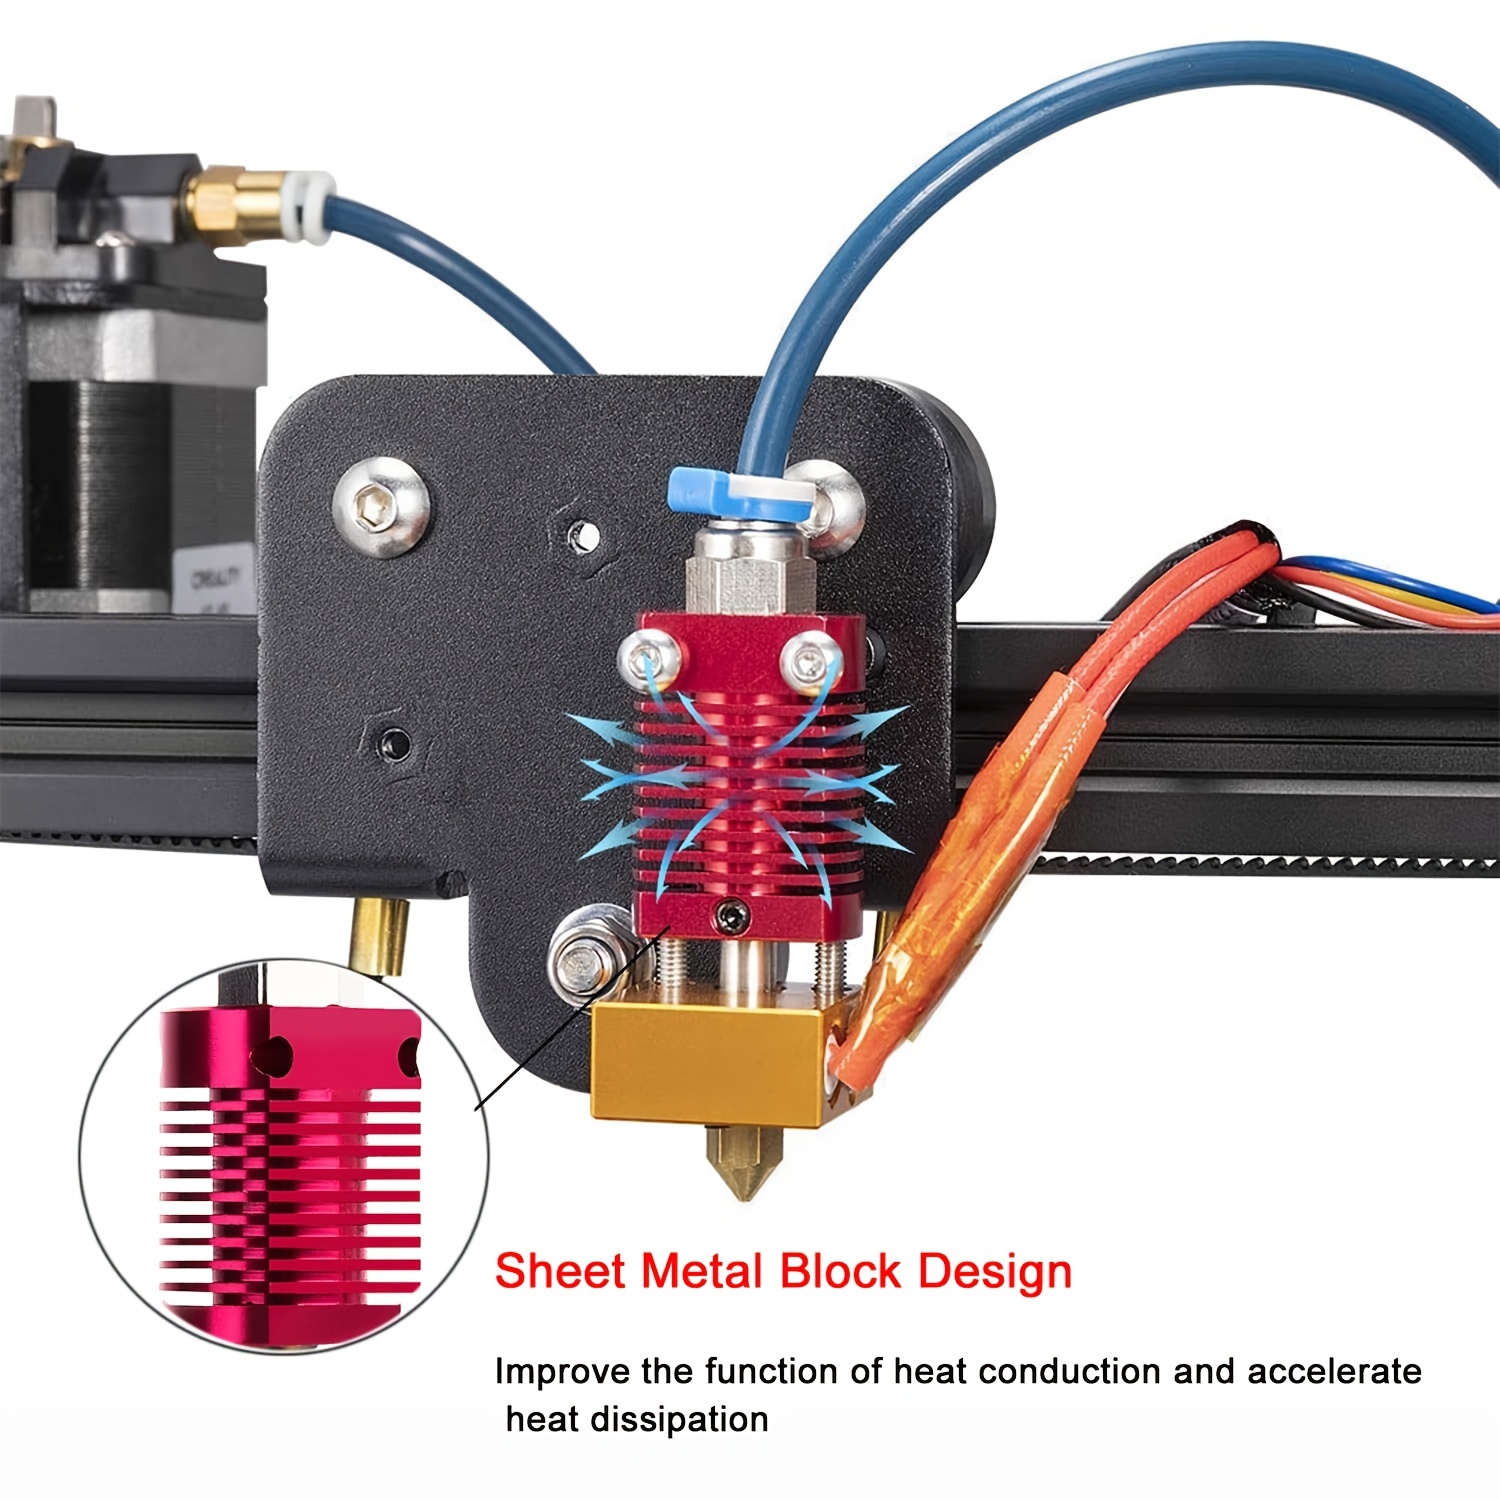 Kit de buse d'imprimante 3D Kit Mk8 Hotend Kit compatible avec Alfawise U20  U30 Creality Ender 3 assemblé Mk8 Extruder Kit d'extrémité chaude avec buse  de 0,4 mm, 24V 40W [